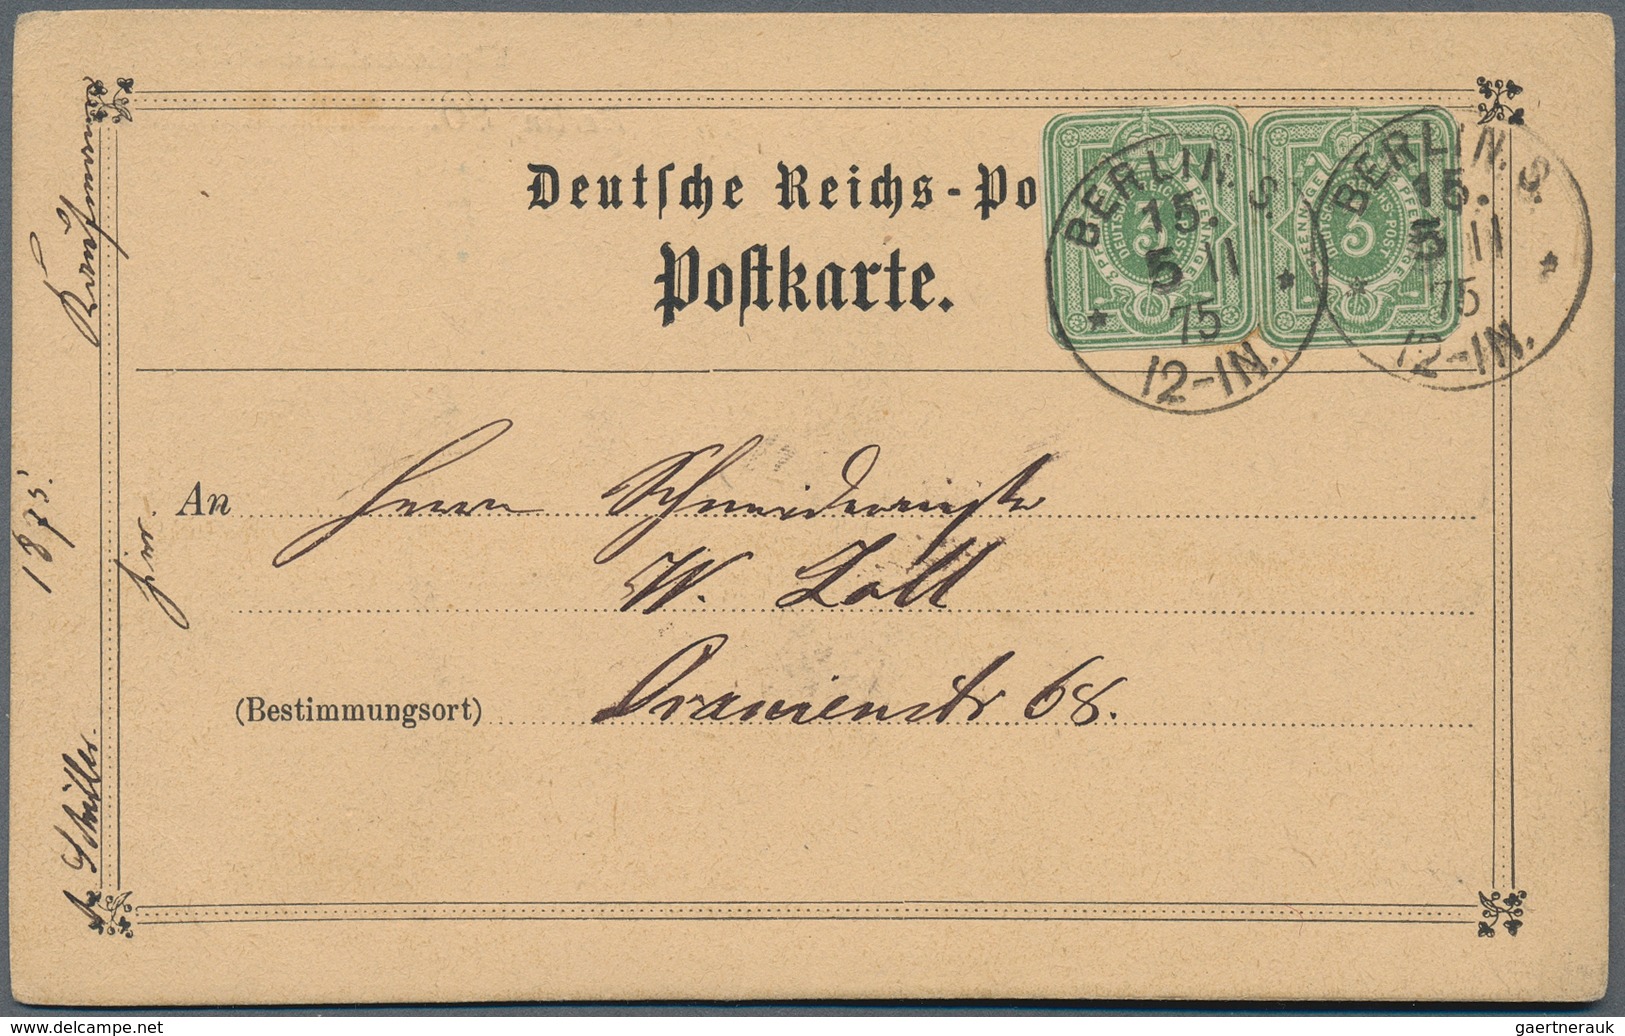 Deutsches Reich - Pfennige: 1875, Dekorative Postkarte Ab "BERLIN S 15 *8/11 75*" Im Ort Gelaufen, F - Covers & Documents